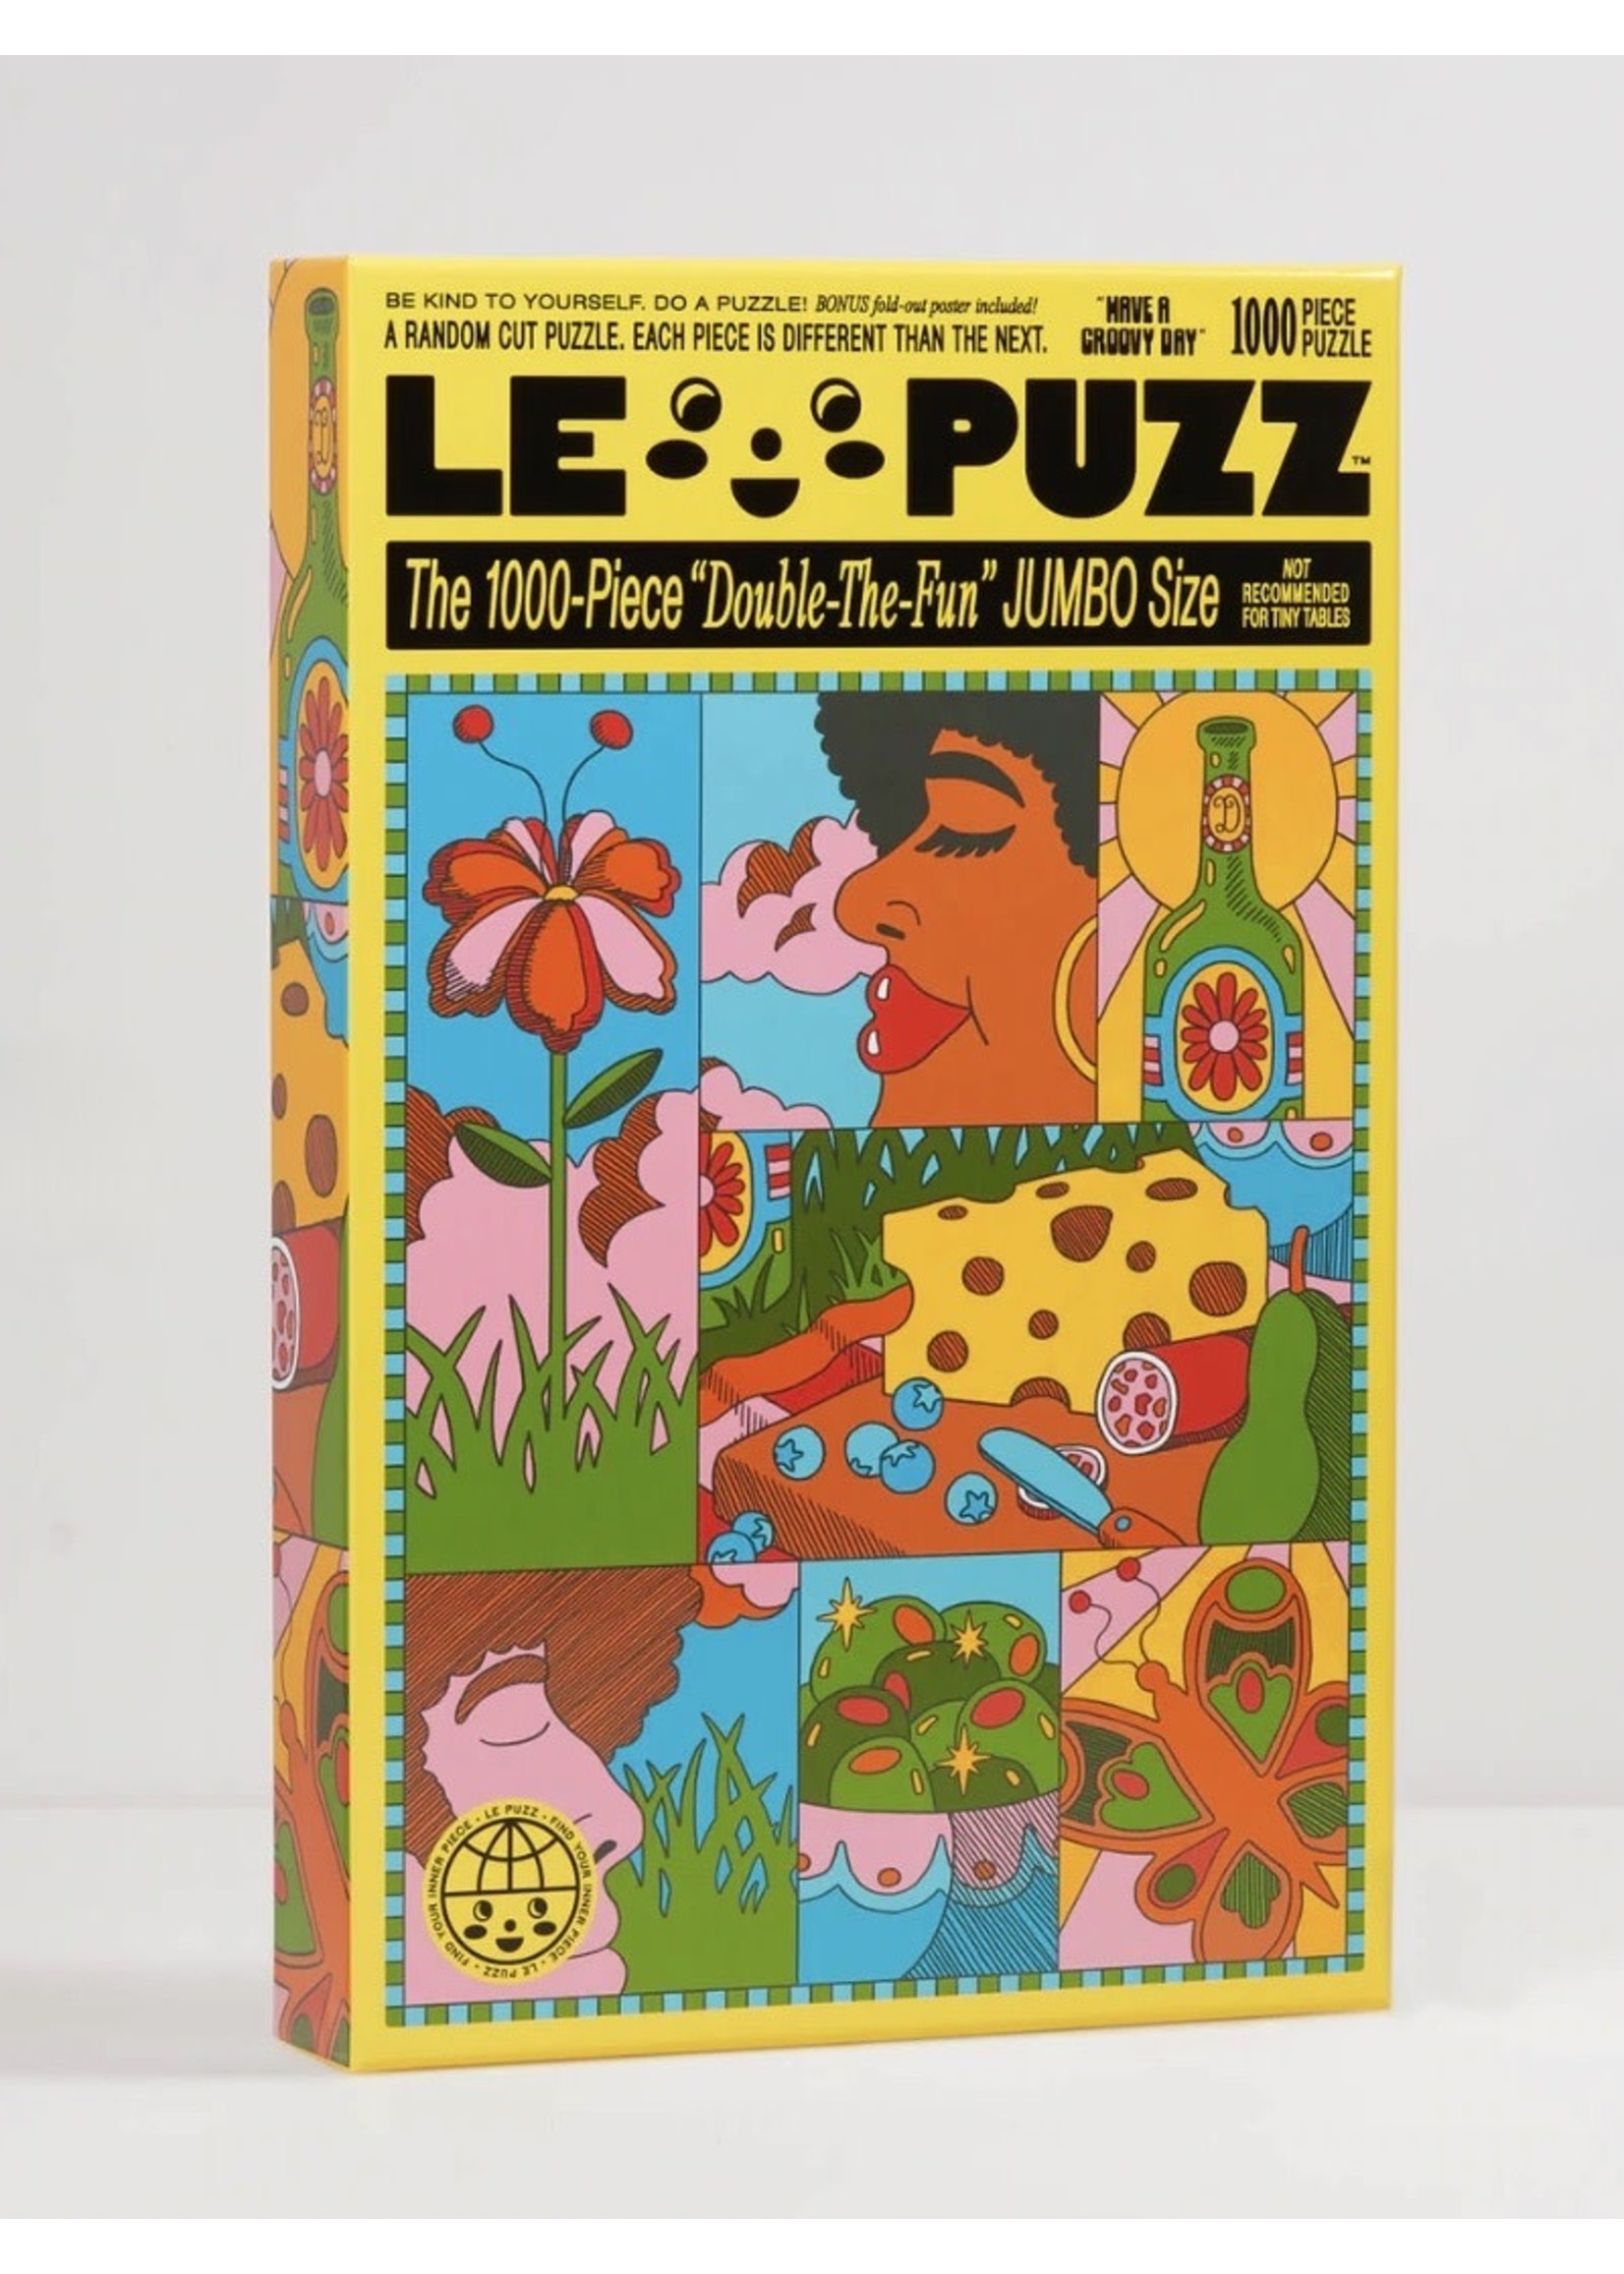 Le Puzz Puzzles "1000 pieces" by LE PUZZ